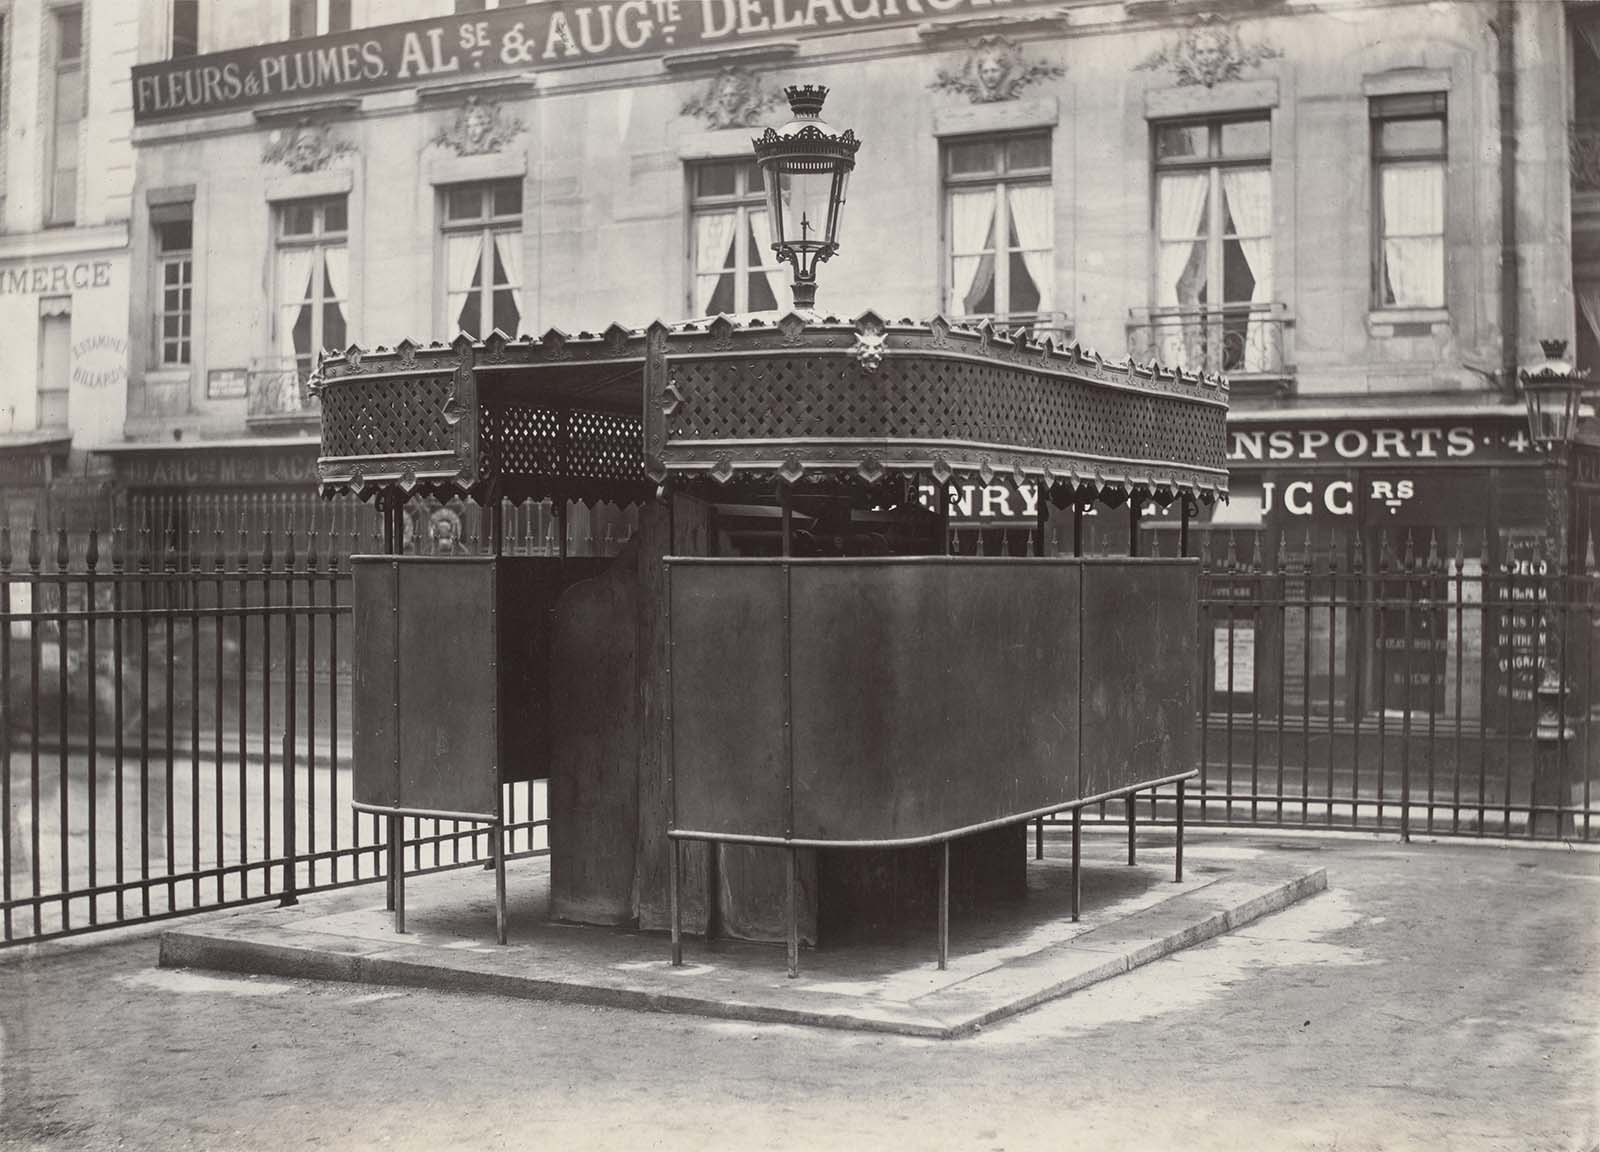 Pissoirs : Les urinoirs publics d'époque de Paris, 1865-1875